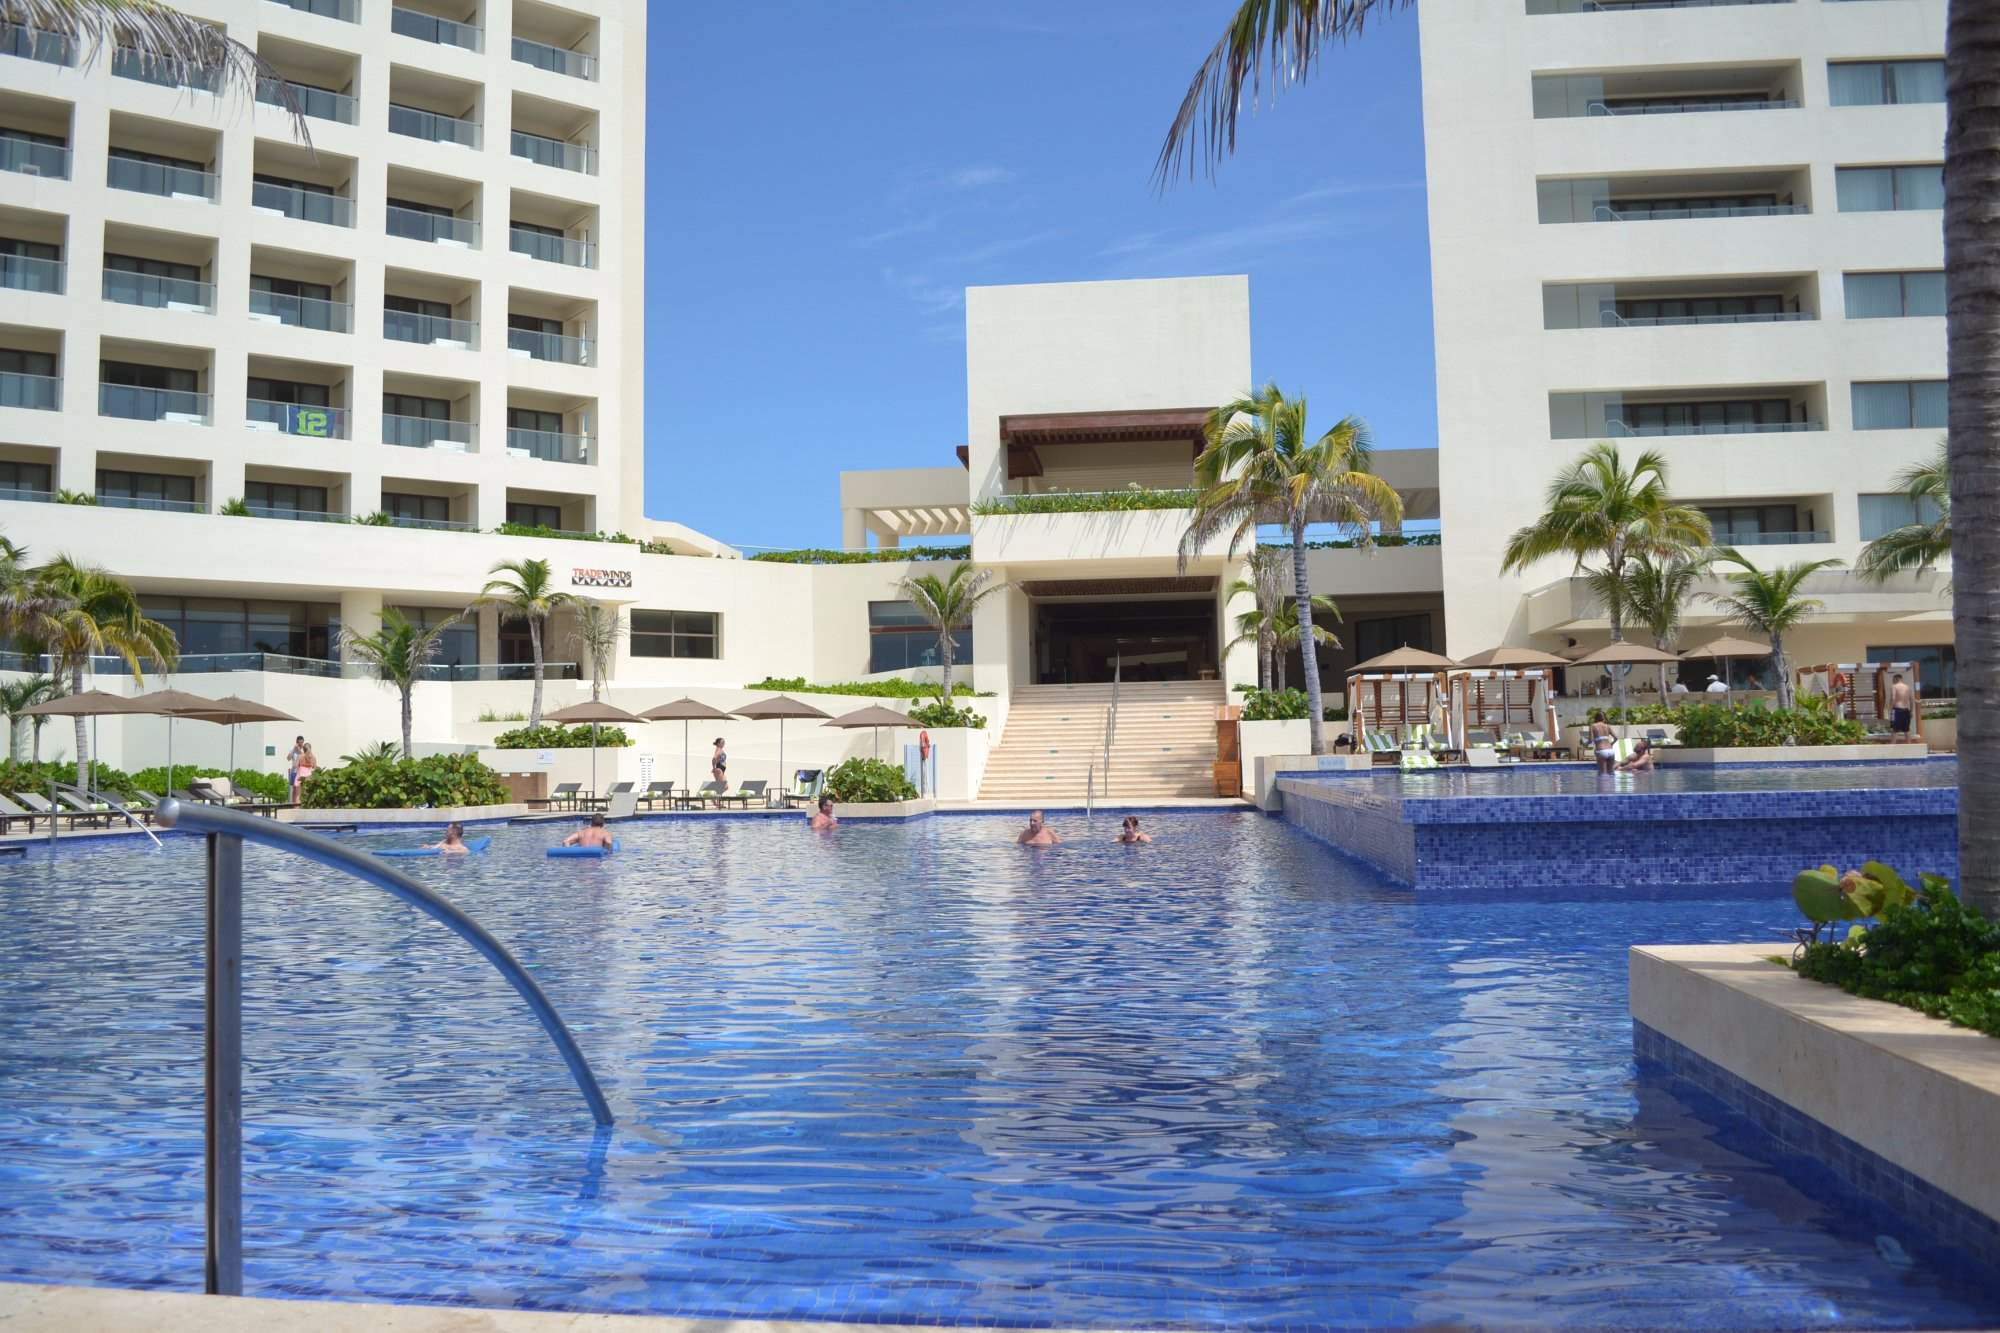 Hyatt Ziva Cancun , Cancun - Reviews, Photos, Maps, Live webcam